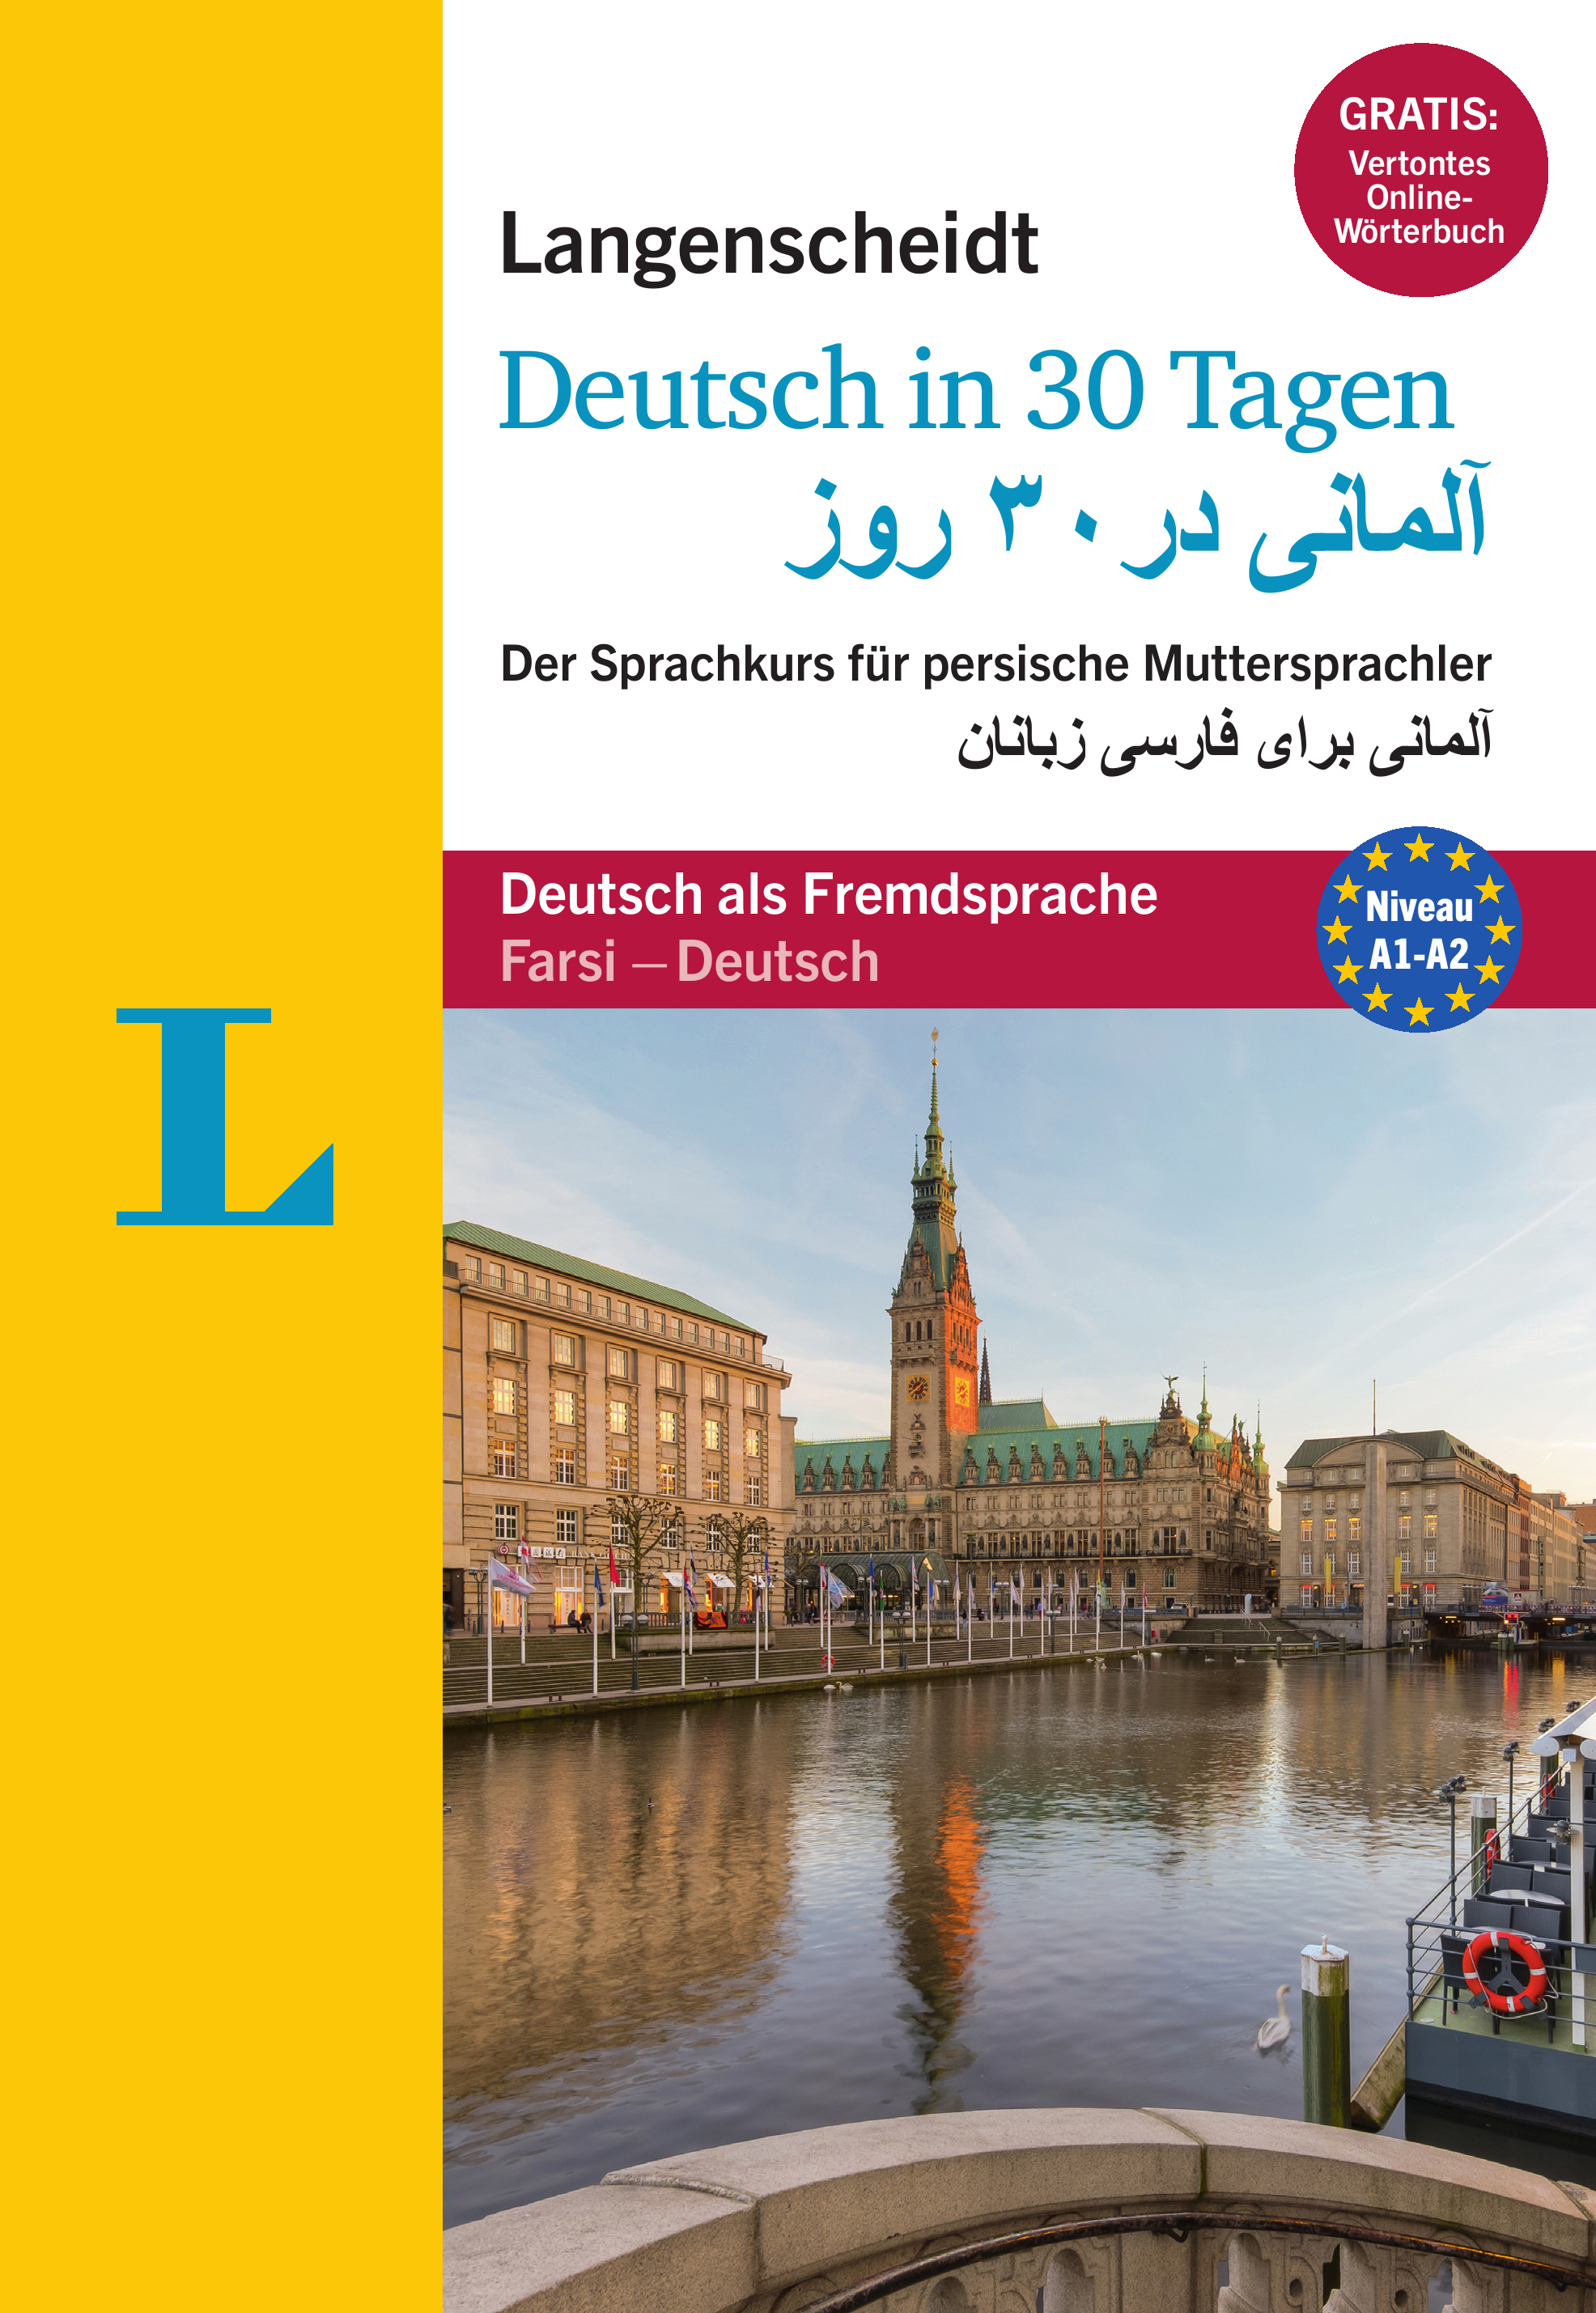 Langenscheidt in 30 Tagen Deutsch